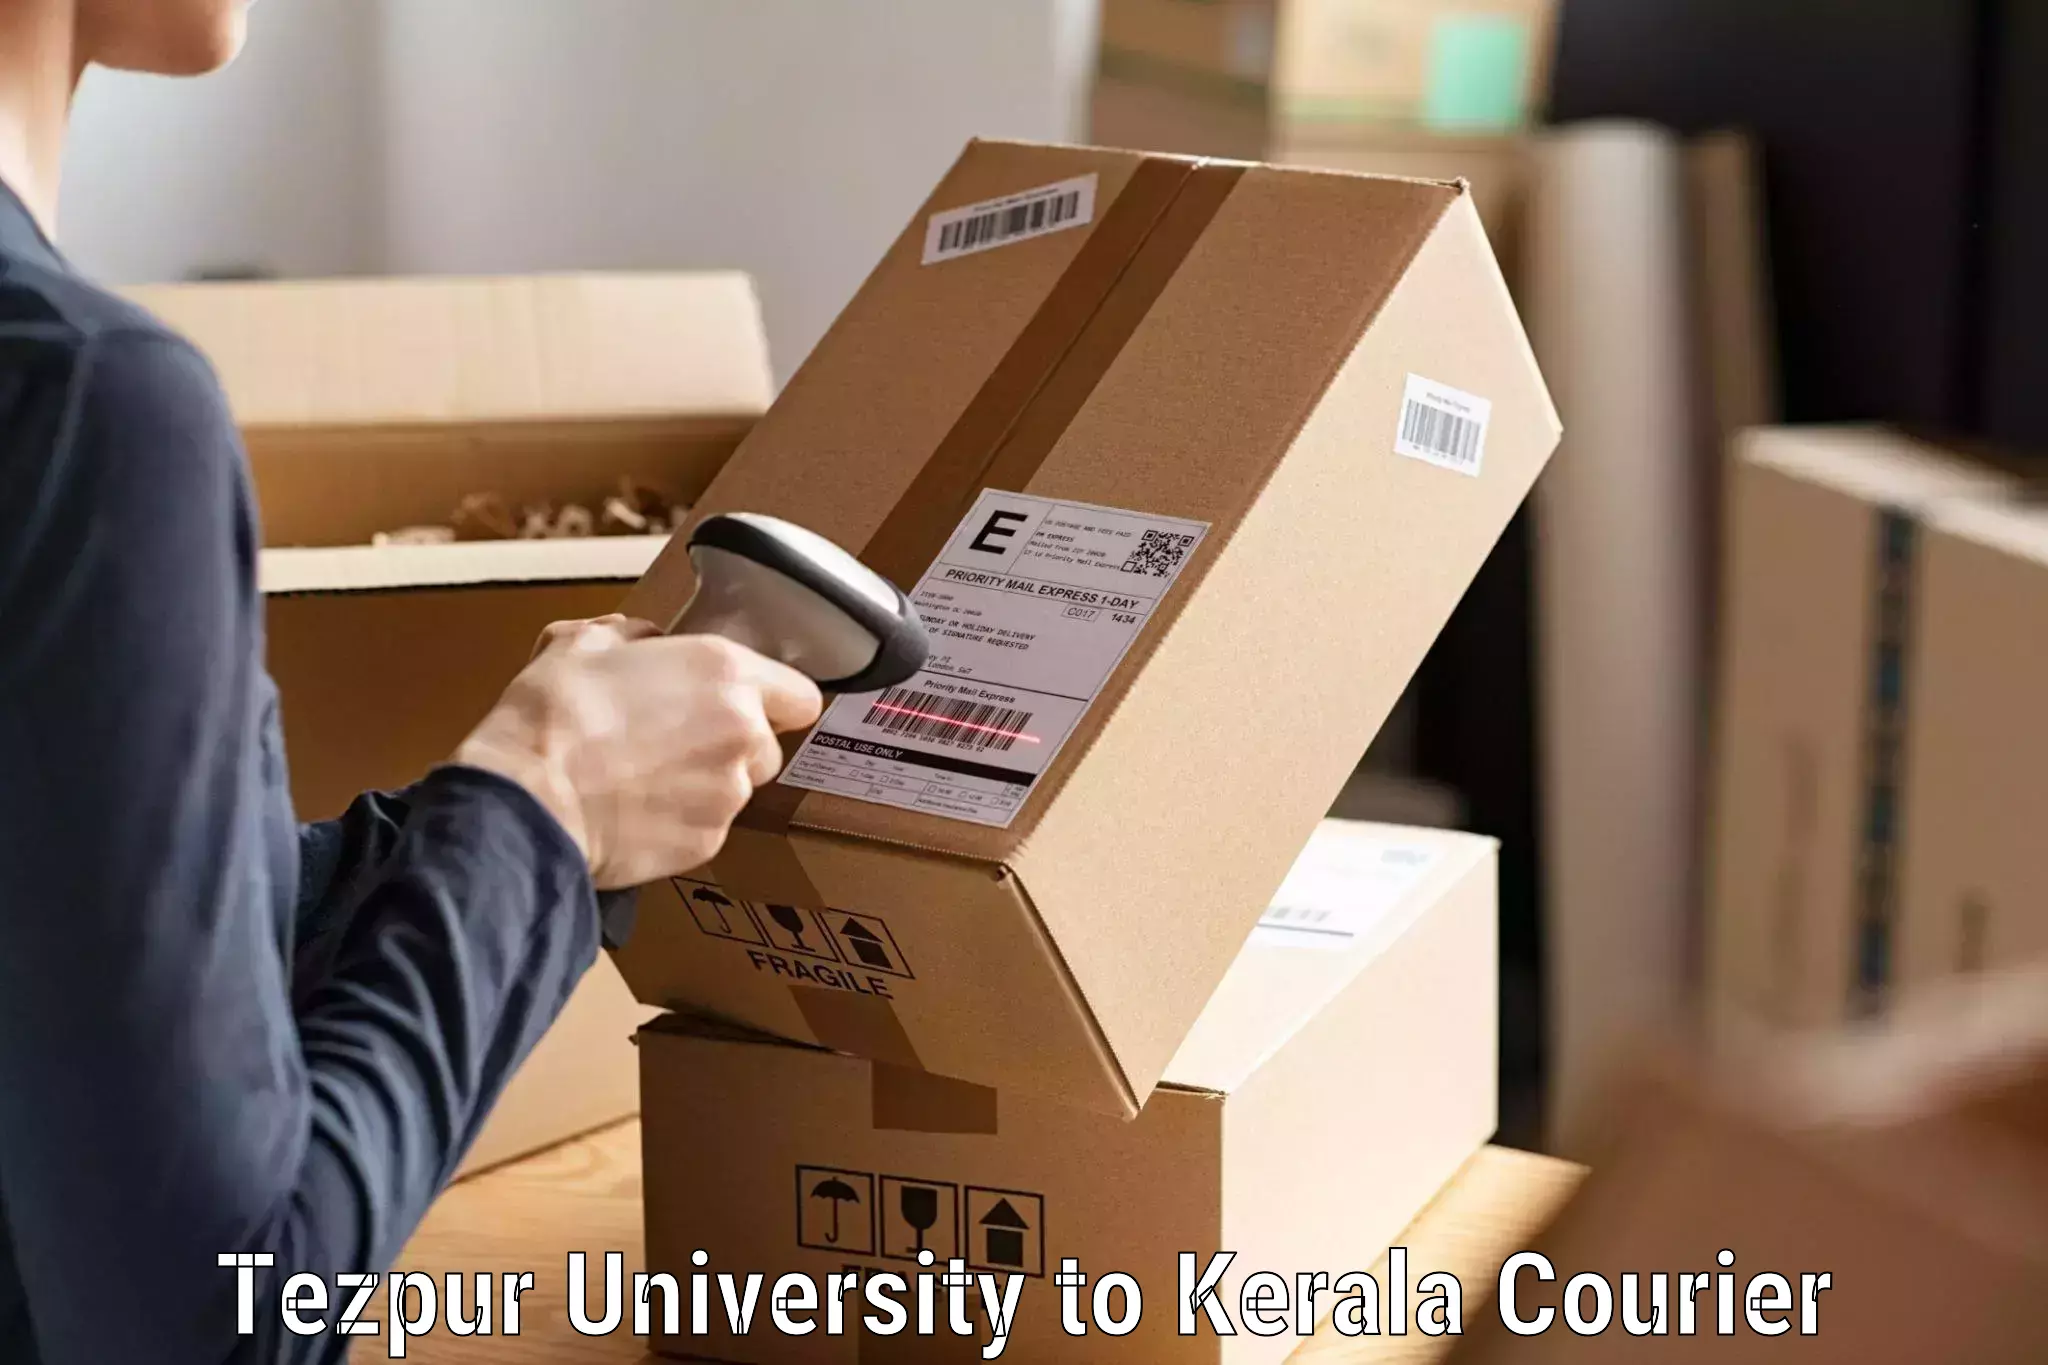 Expedited shipping solutions Tezpur University to Kerala University Thiruvananthapuram